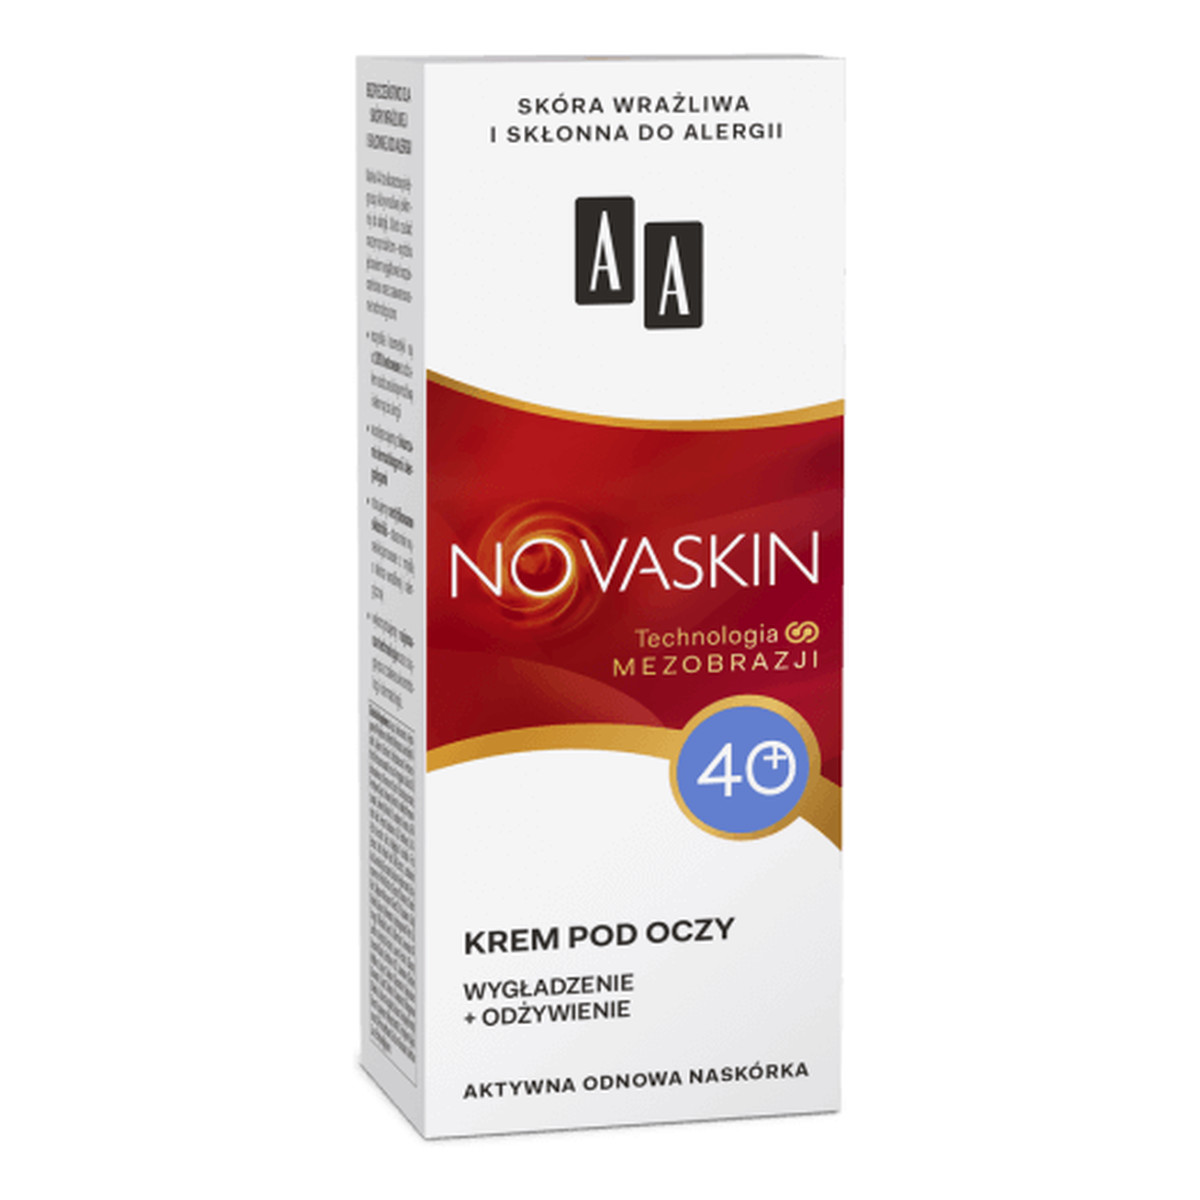 AA Novaskin 40+ Krem pod oczy - wygładzenie + odżywienie, cera dojrzała, 15ml